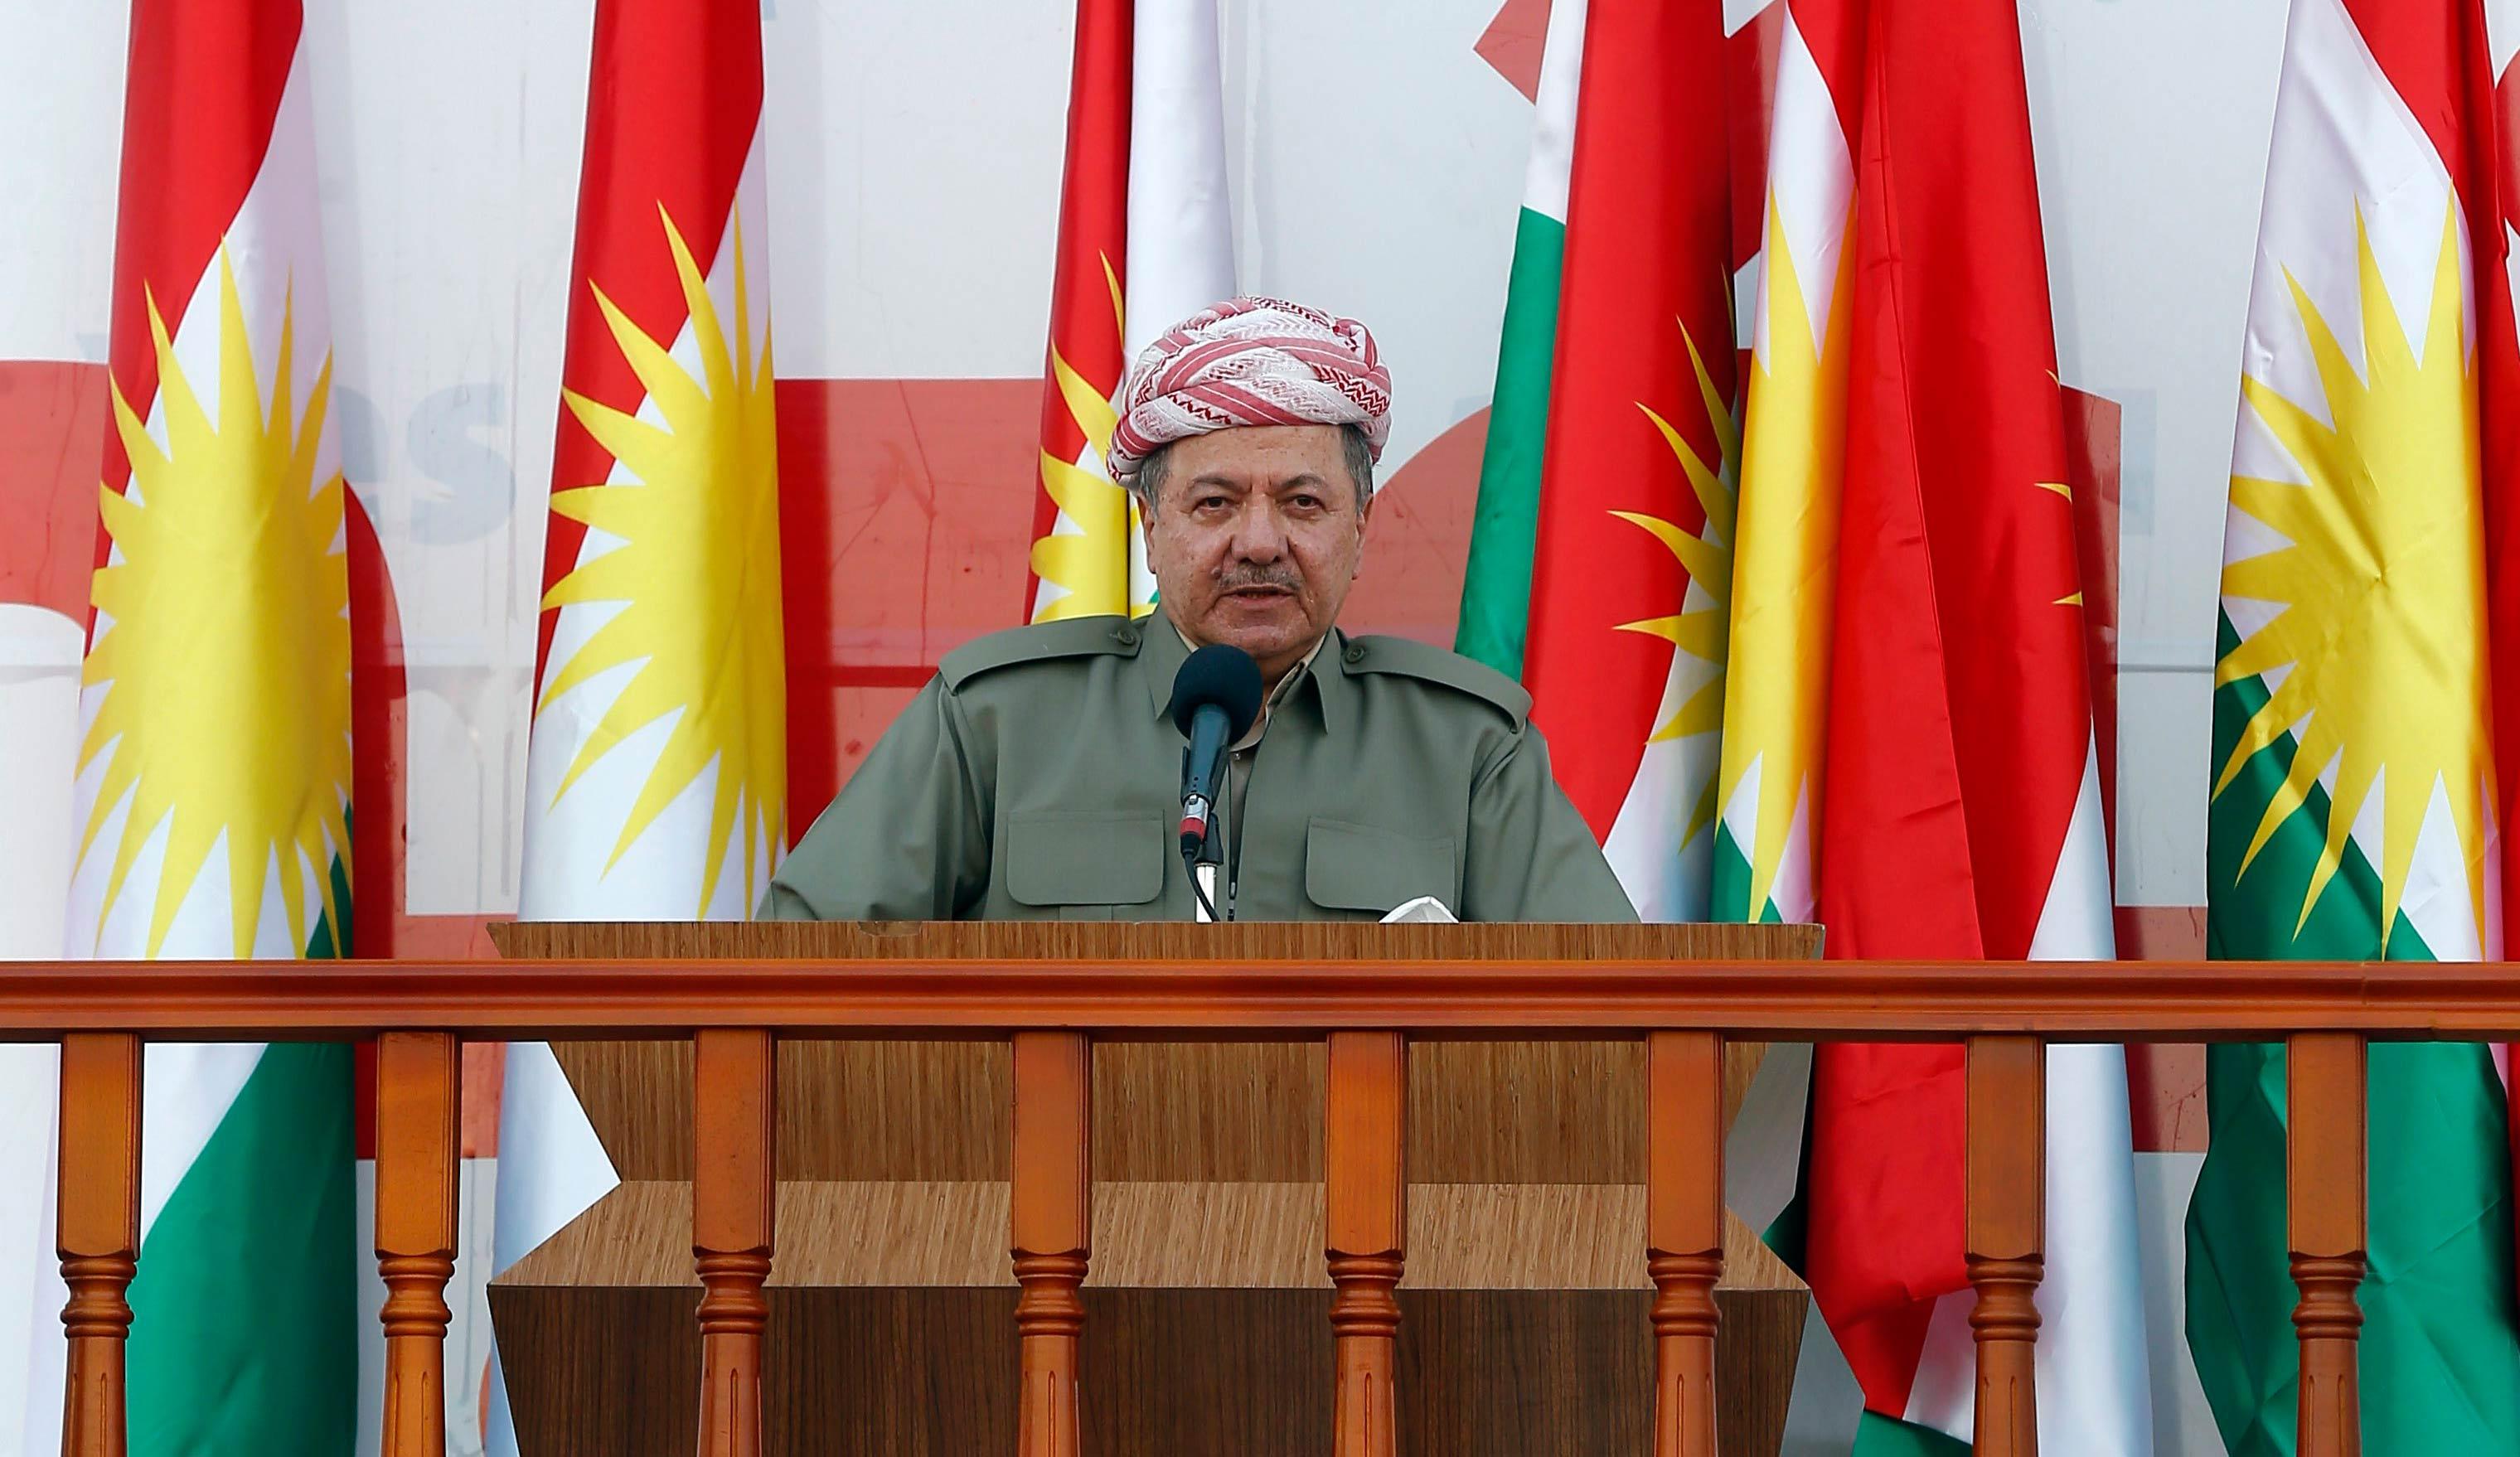 Barzani szde referandumla ilgili nihai kararn bugn aklayacak